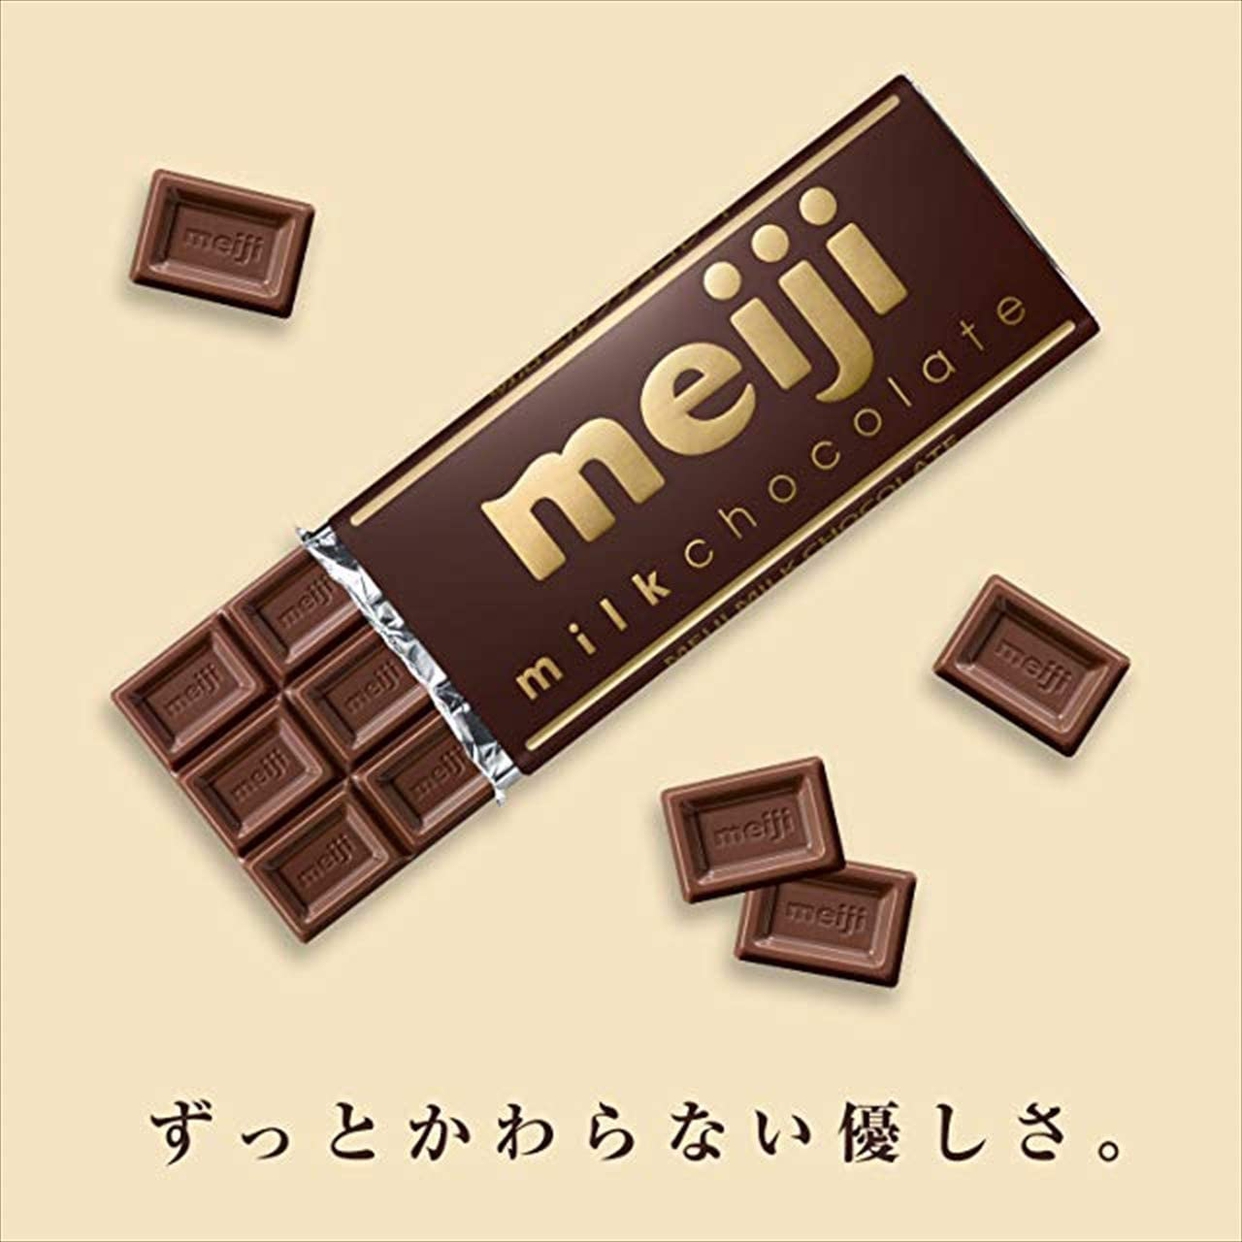 明治(meiji) ミルクチョコレートの商品画像サムネ4 